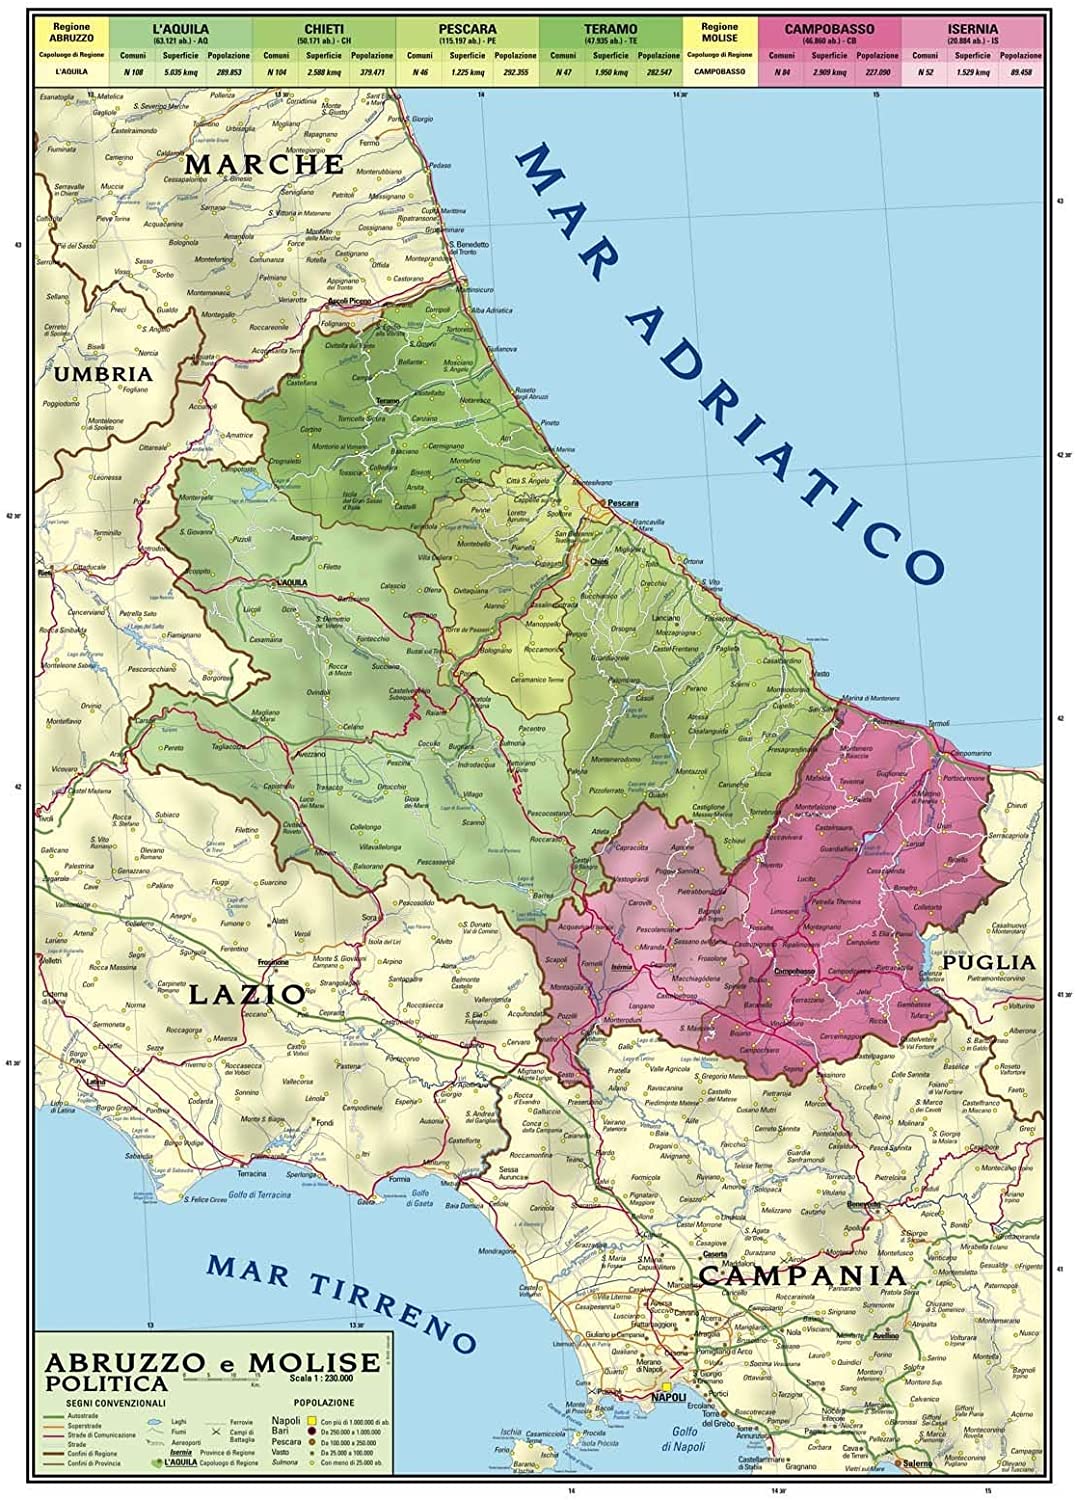 Manifesto per L’Abruzzo: nasce “Futur A Confederazione Plurale”, una nuova aggregazione politica